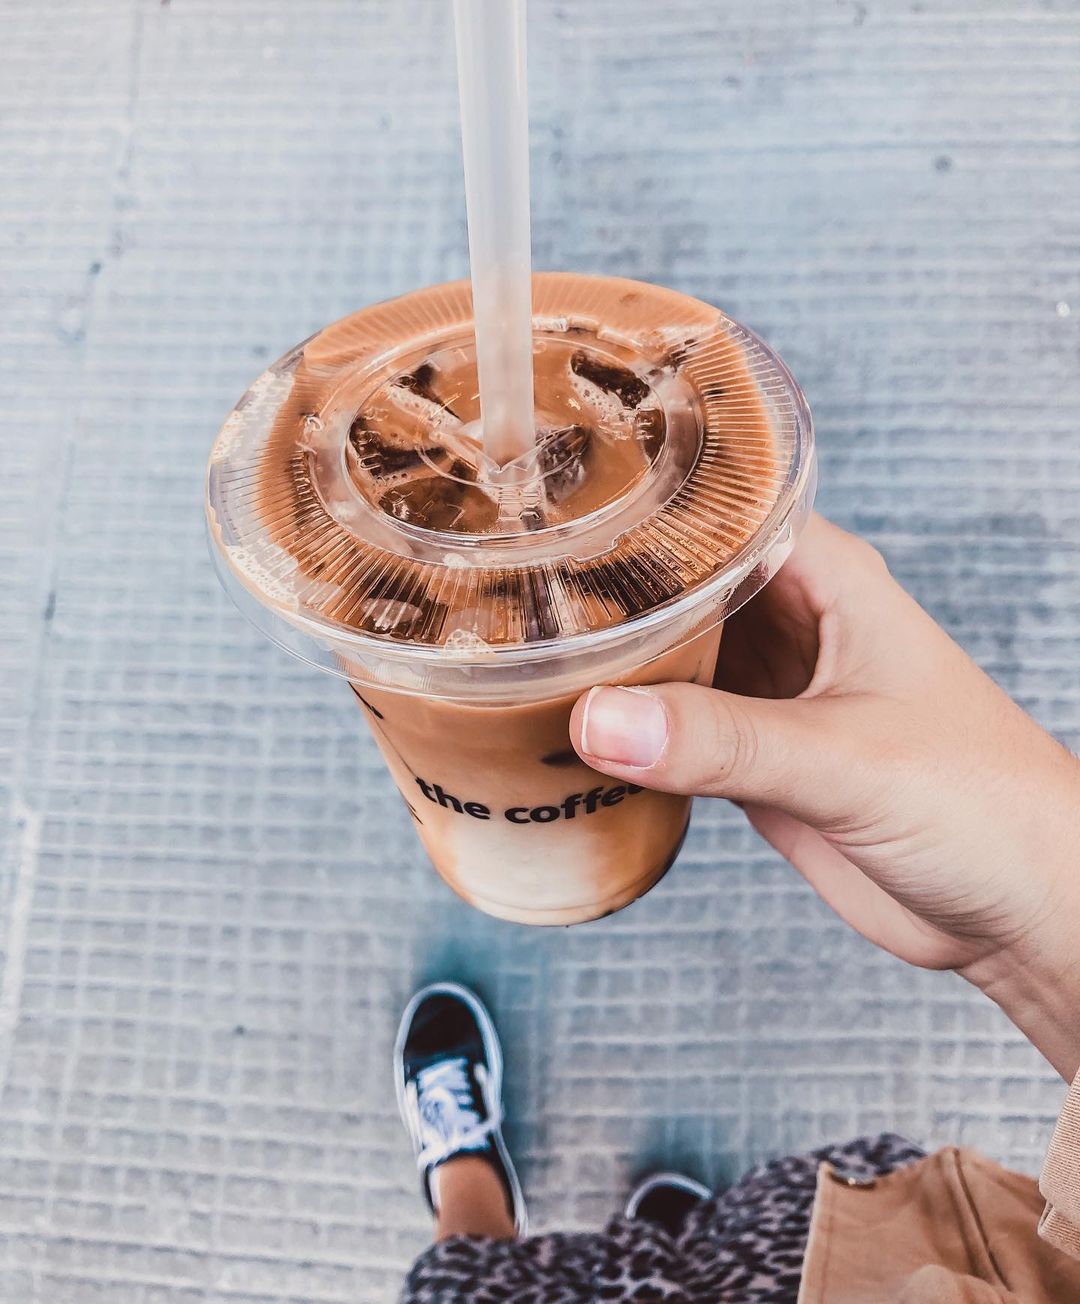 The Coffee (Foto: Reprodução/Instagram)